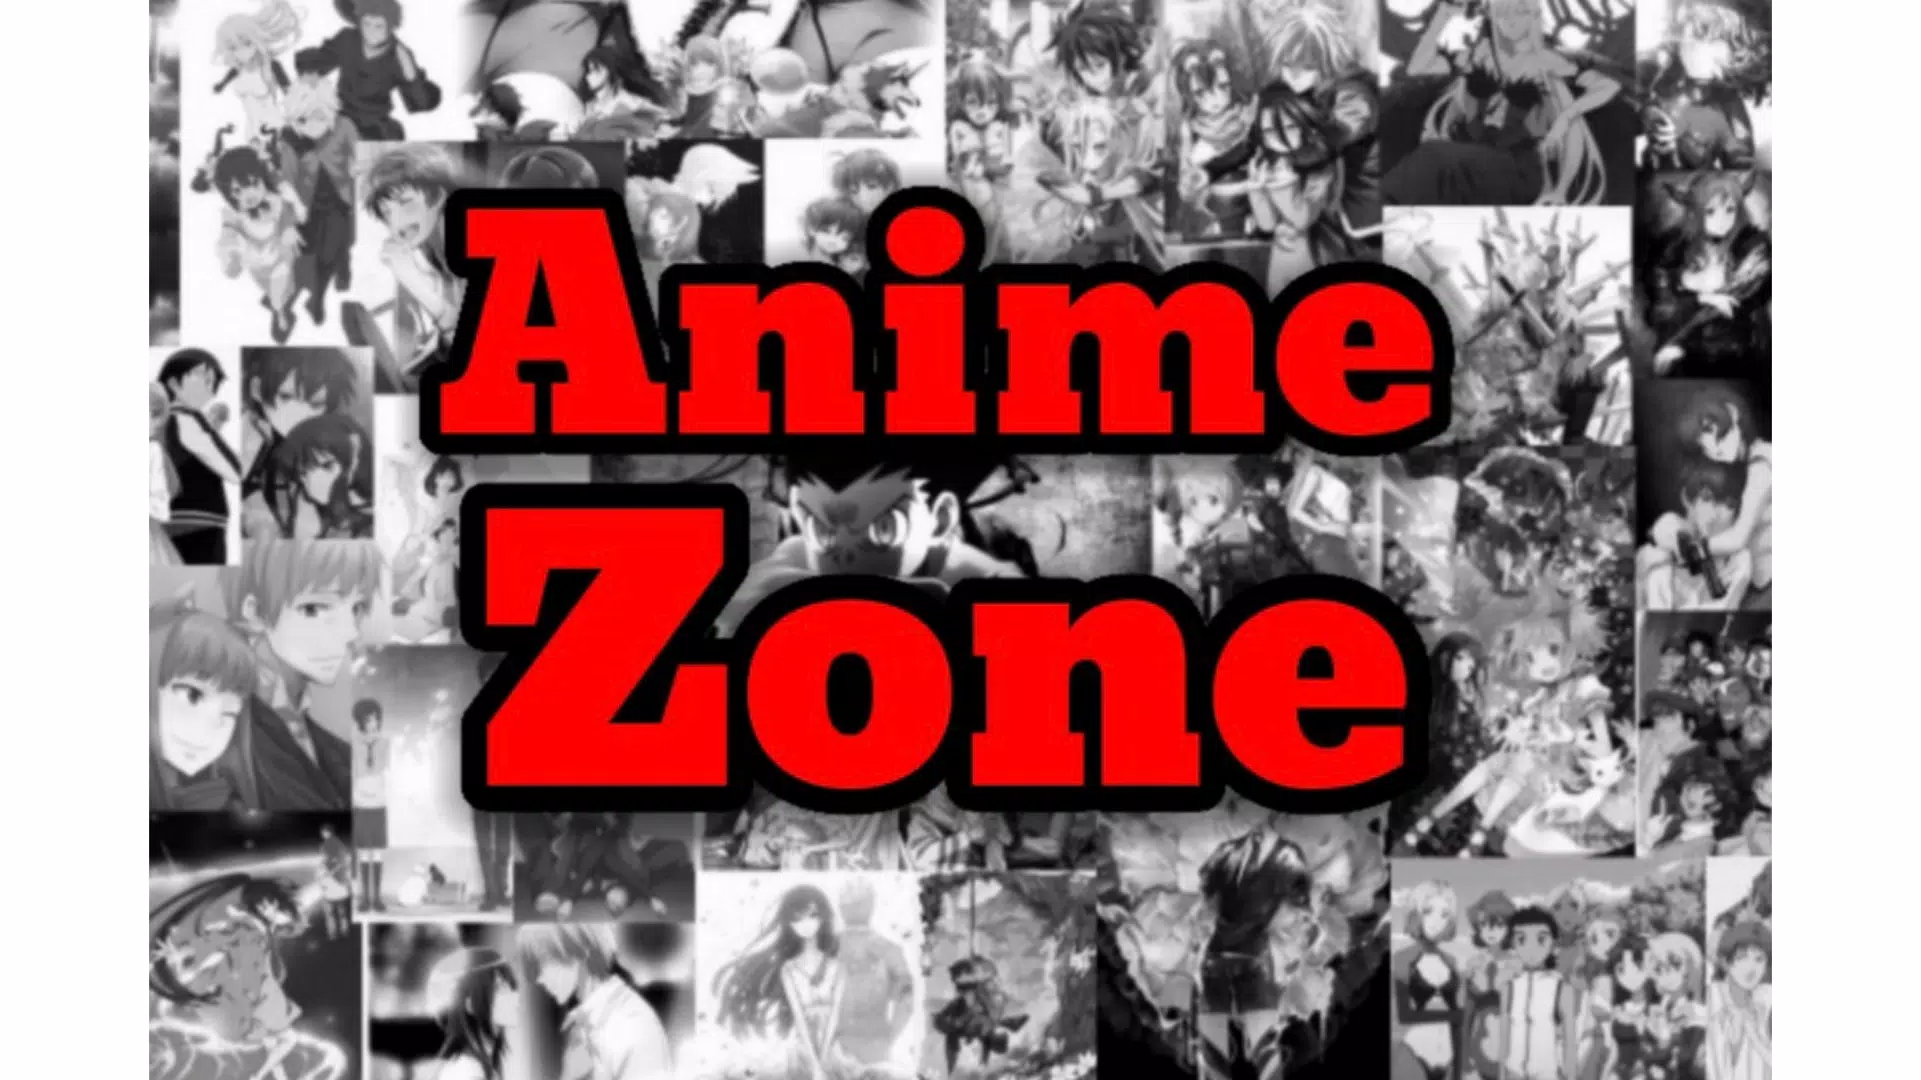 Animes Zone